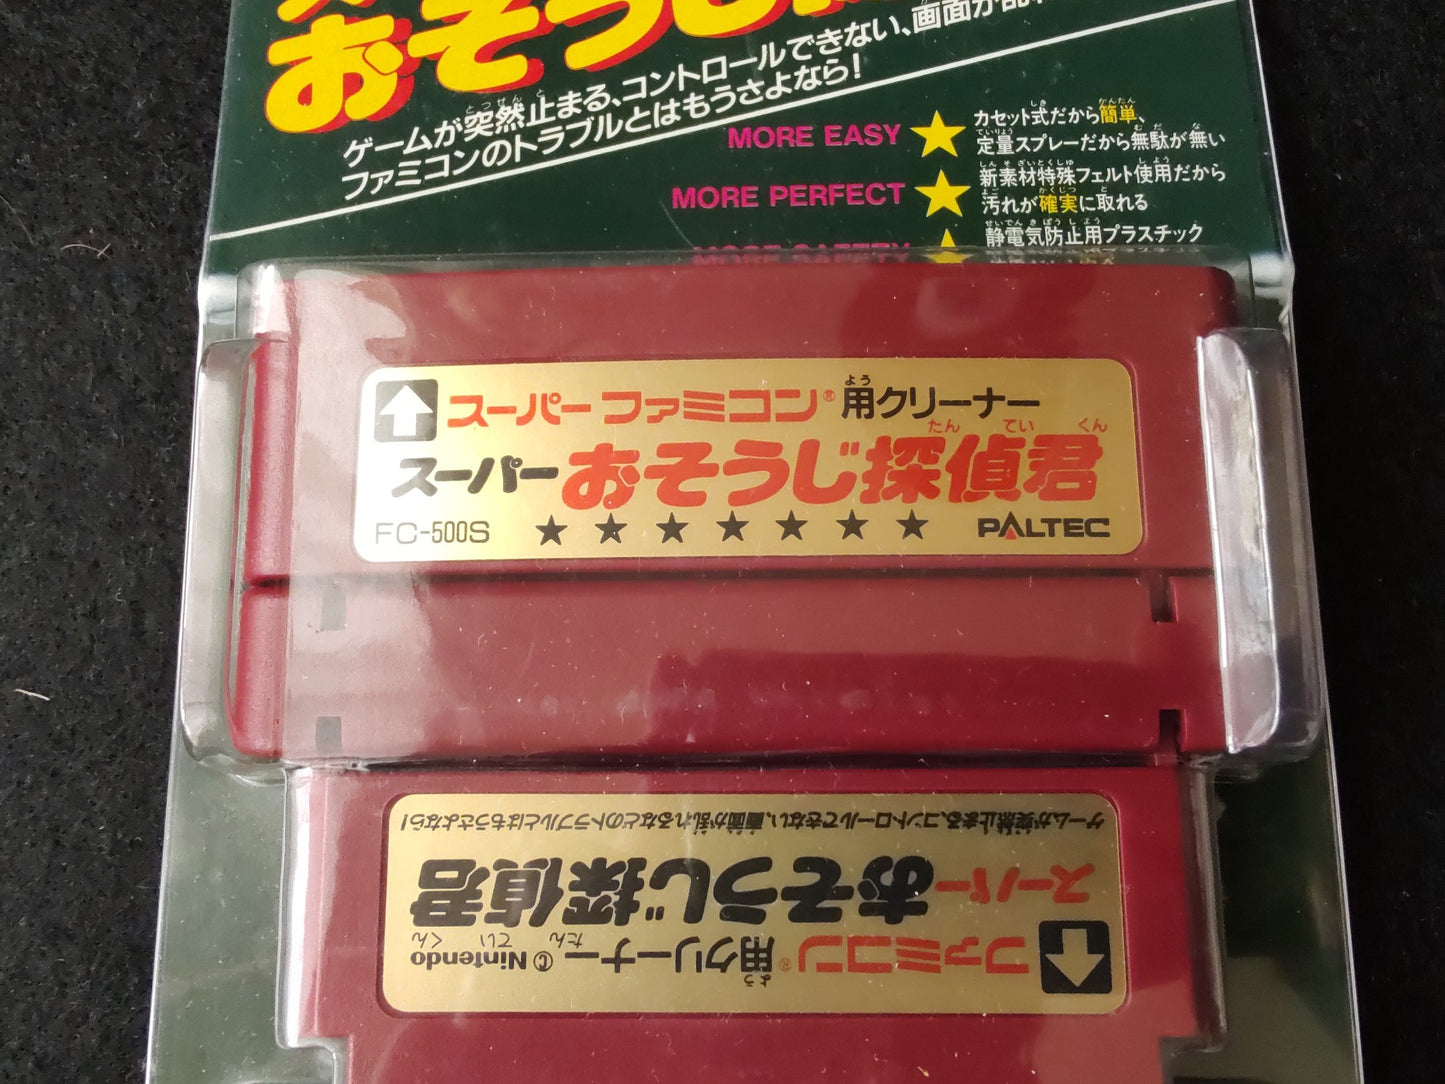 Super Famicom SUPER OSOUJI TANTEI KUN cleaner cartridge SFC, SNES w/box-f0914-